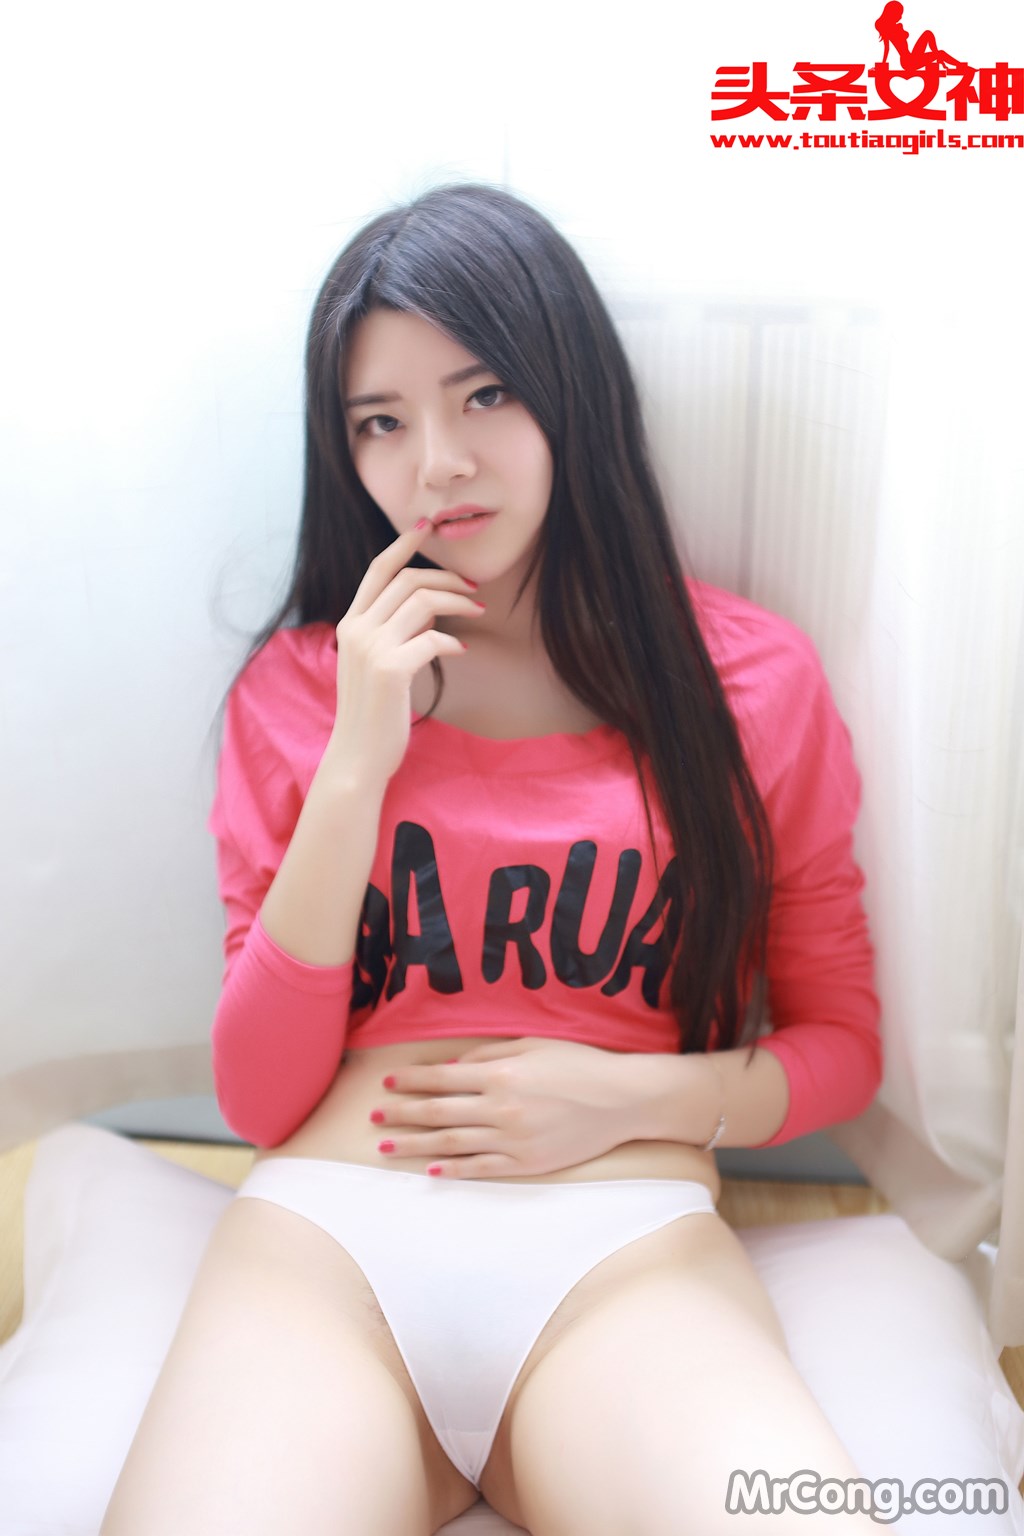 TouTiao 2016-07-13: Model Jing Jing (婧 婧) (52 photos) photo 3-0